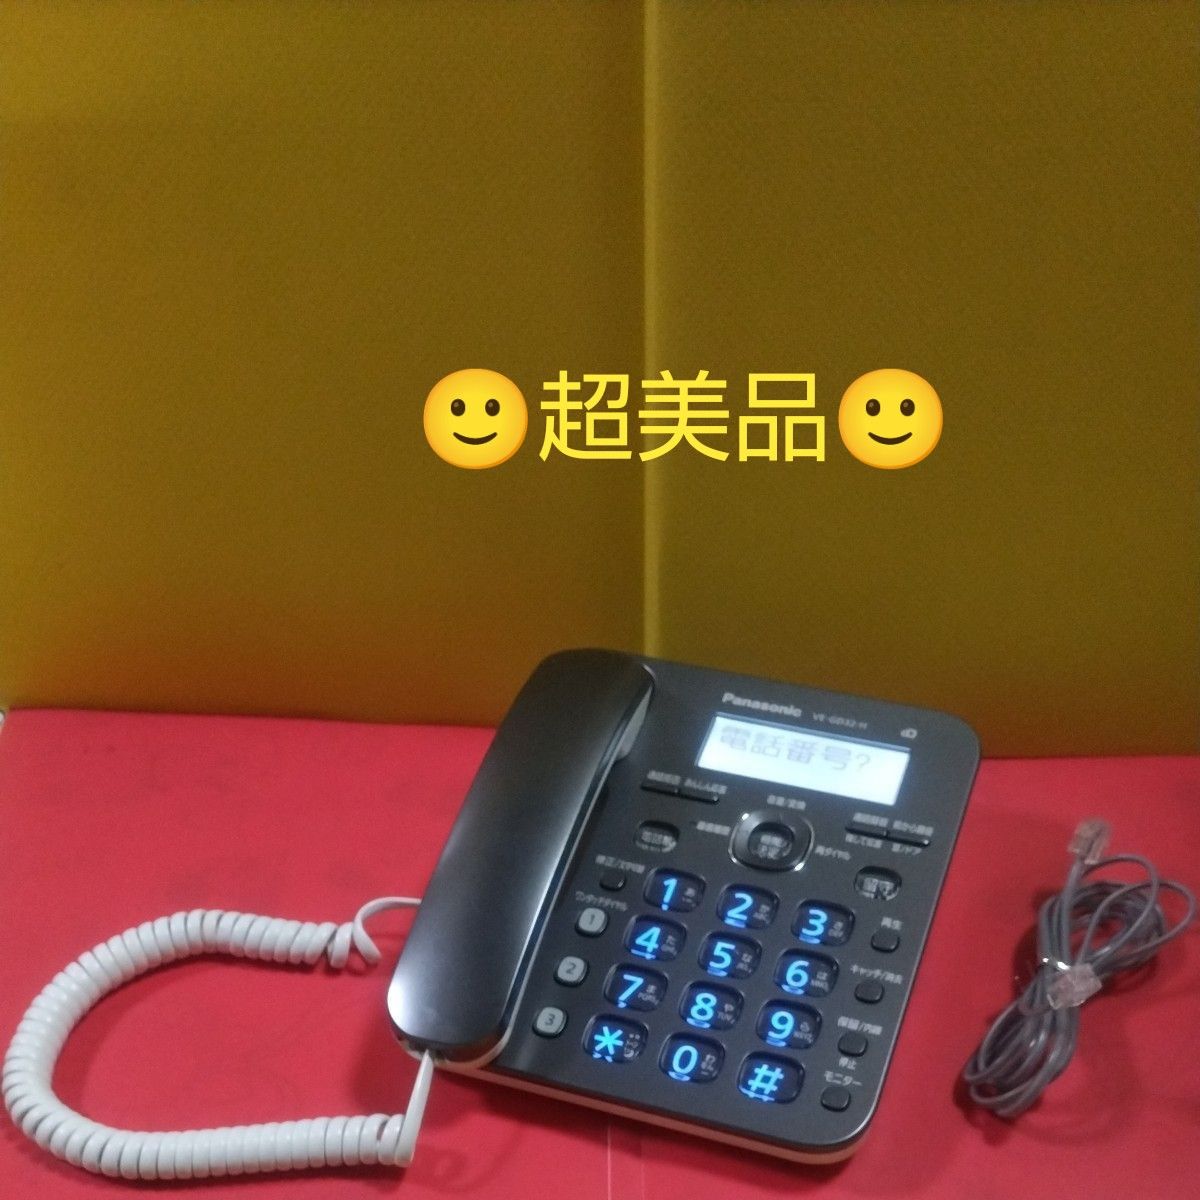 ★ Panasonic RU.RU.RU デジタルコードレス電話機 VE―GD32―H（ダークメタリック） 